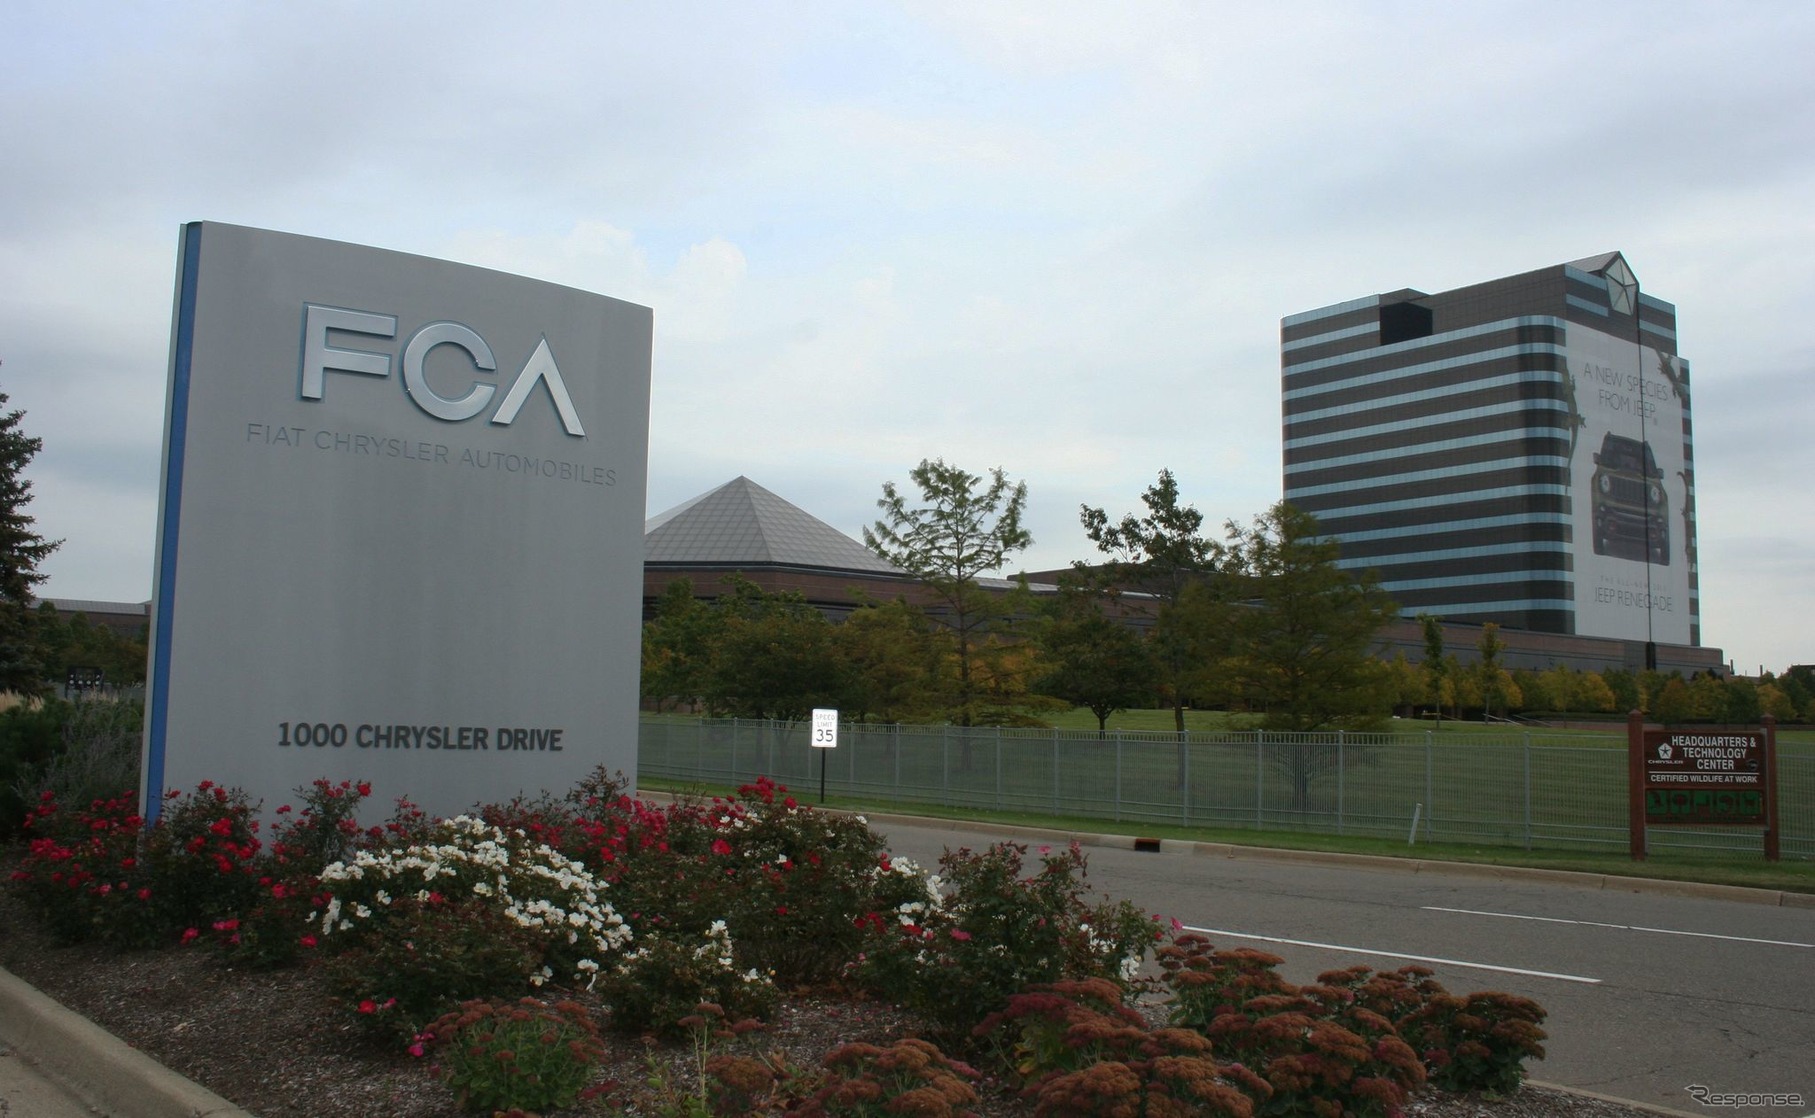 FCAの米国本社